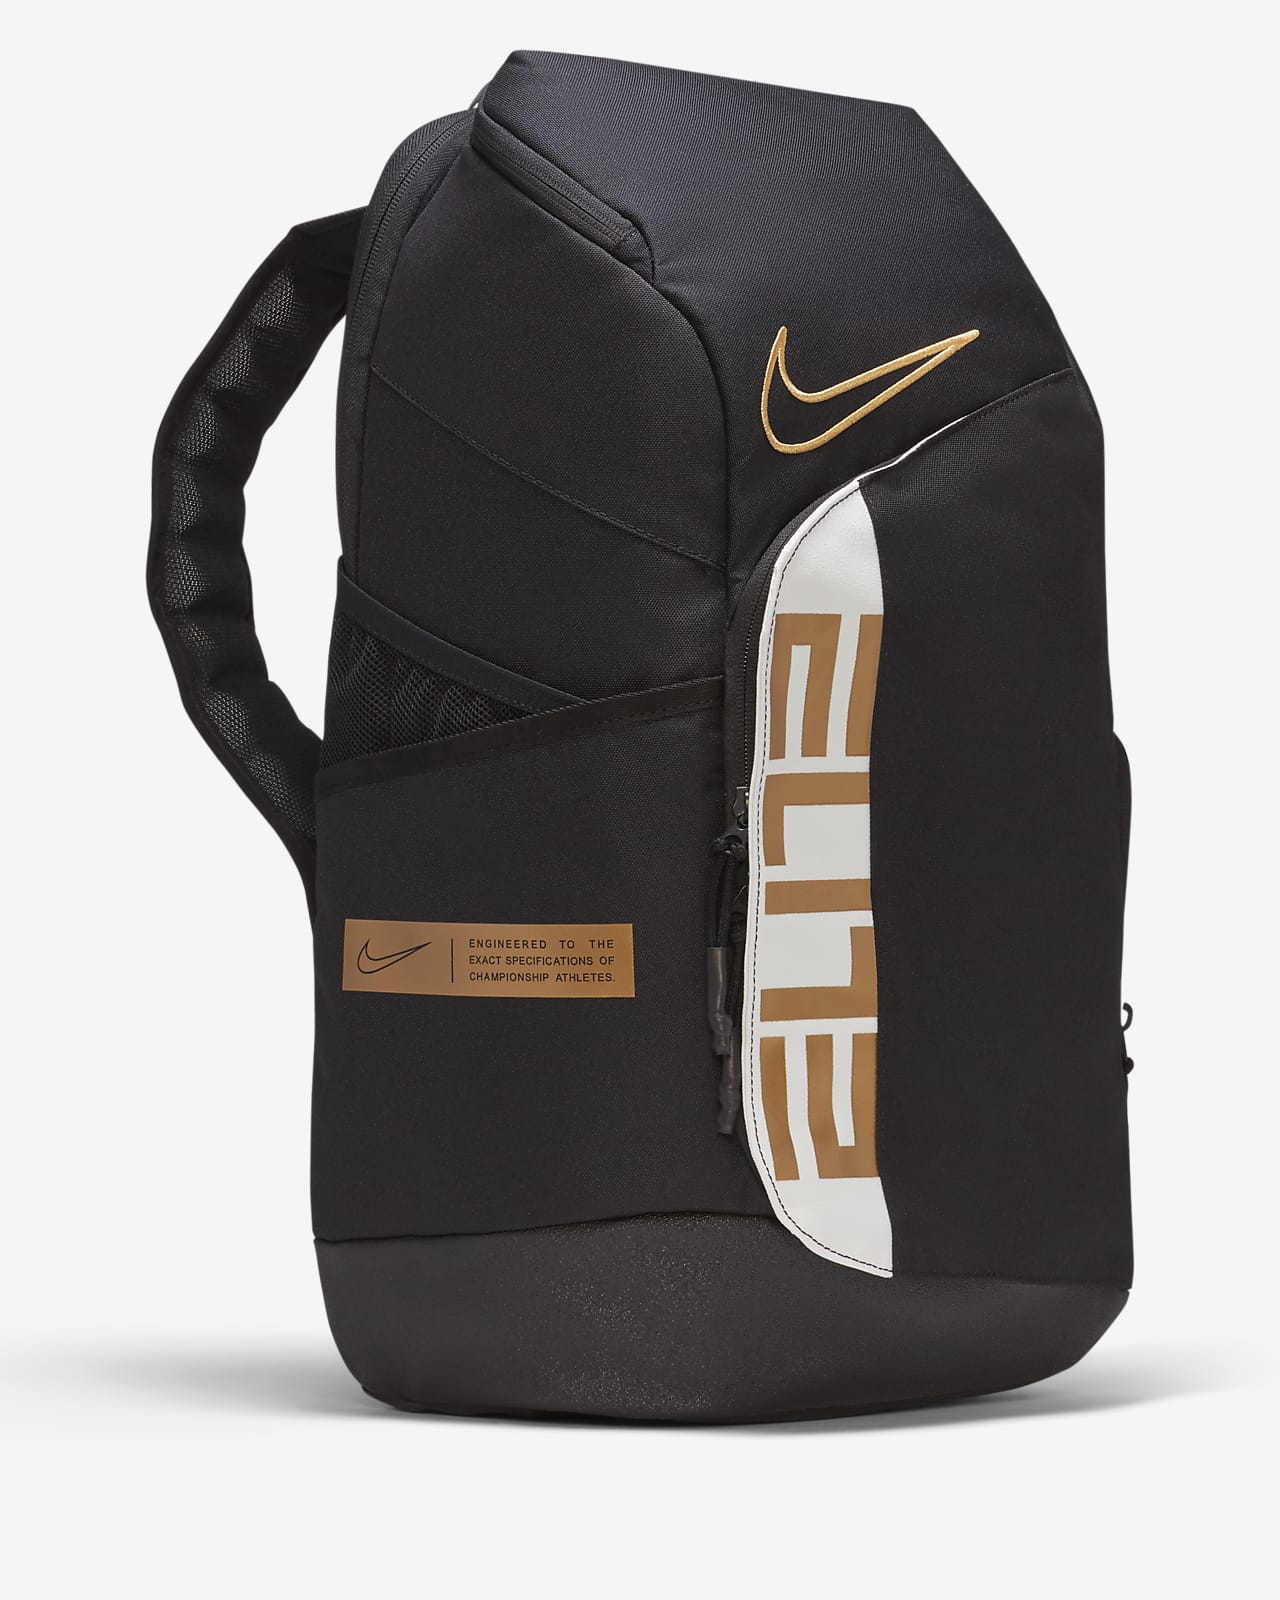 Nike Elite Pro Basketball Backpack | vlr.eng.br